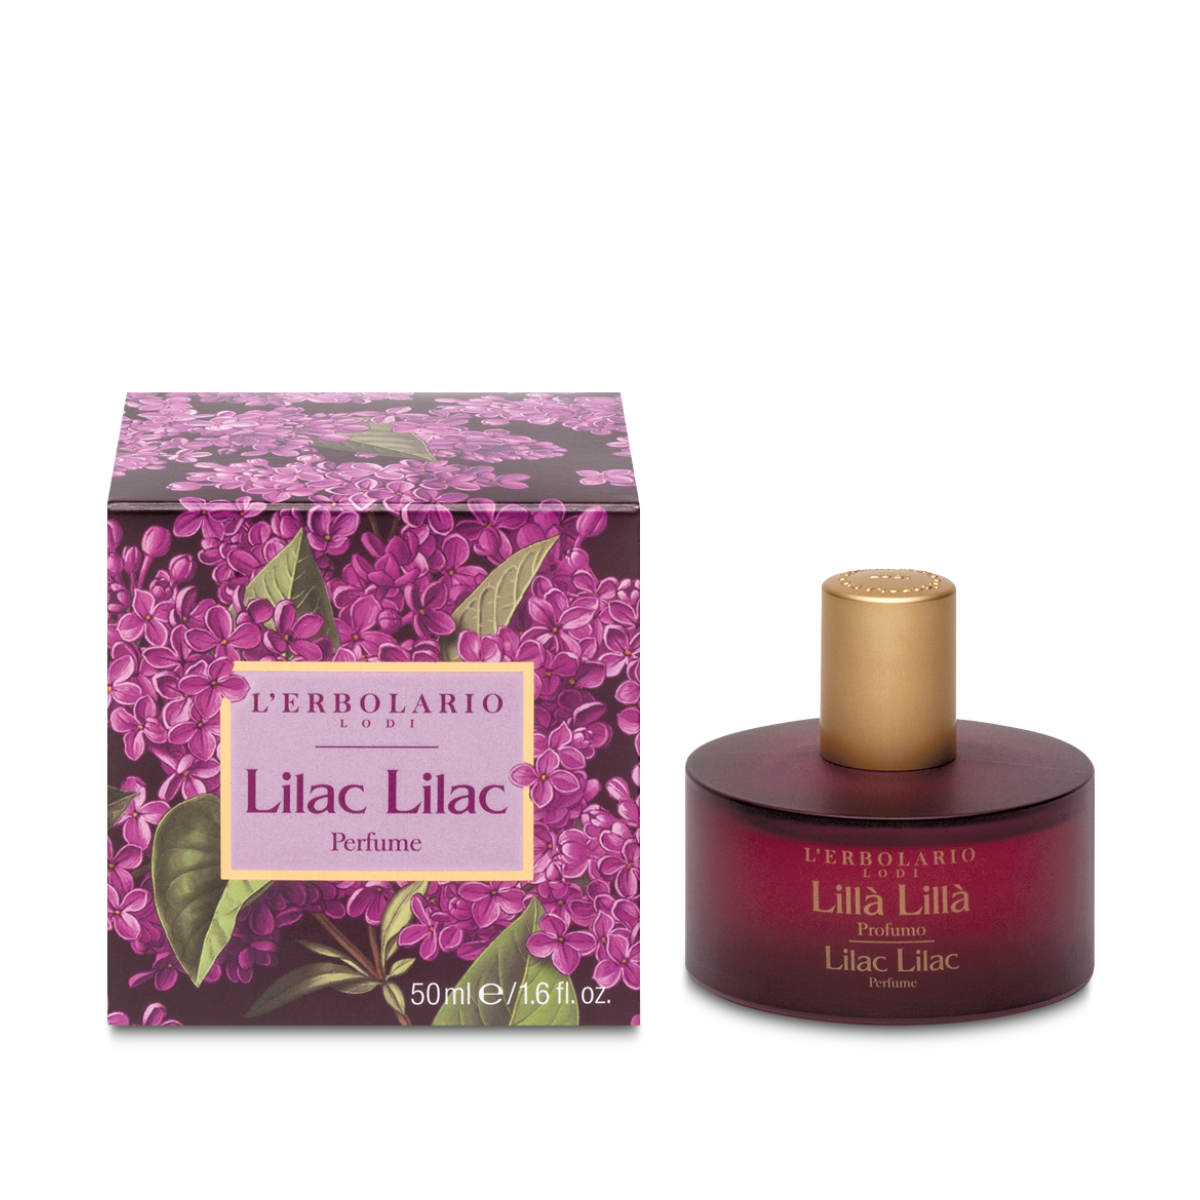 Lilac Lilac Perfume 50ml -  organic-lab-my.myshopify.com